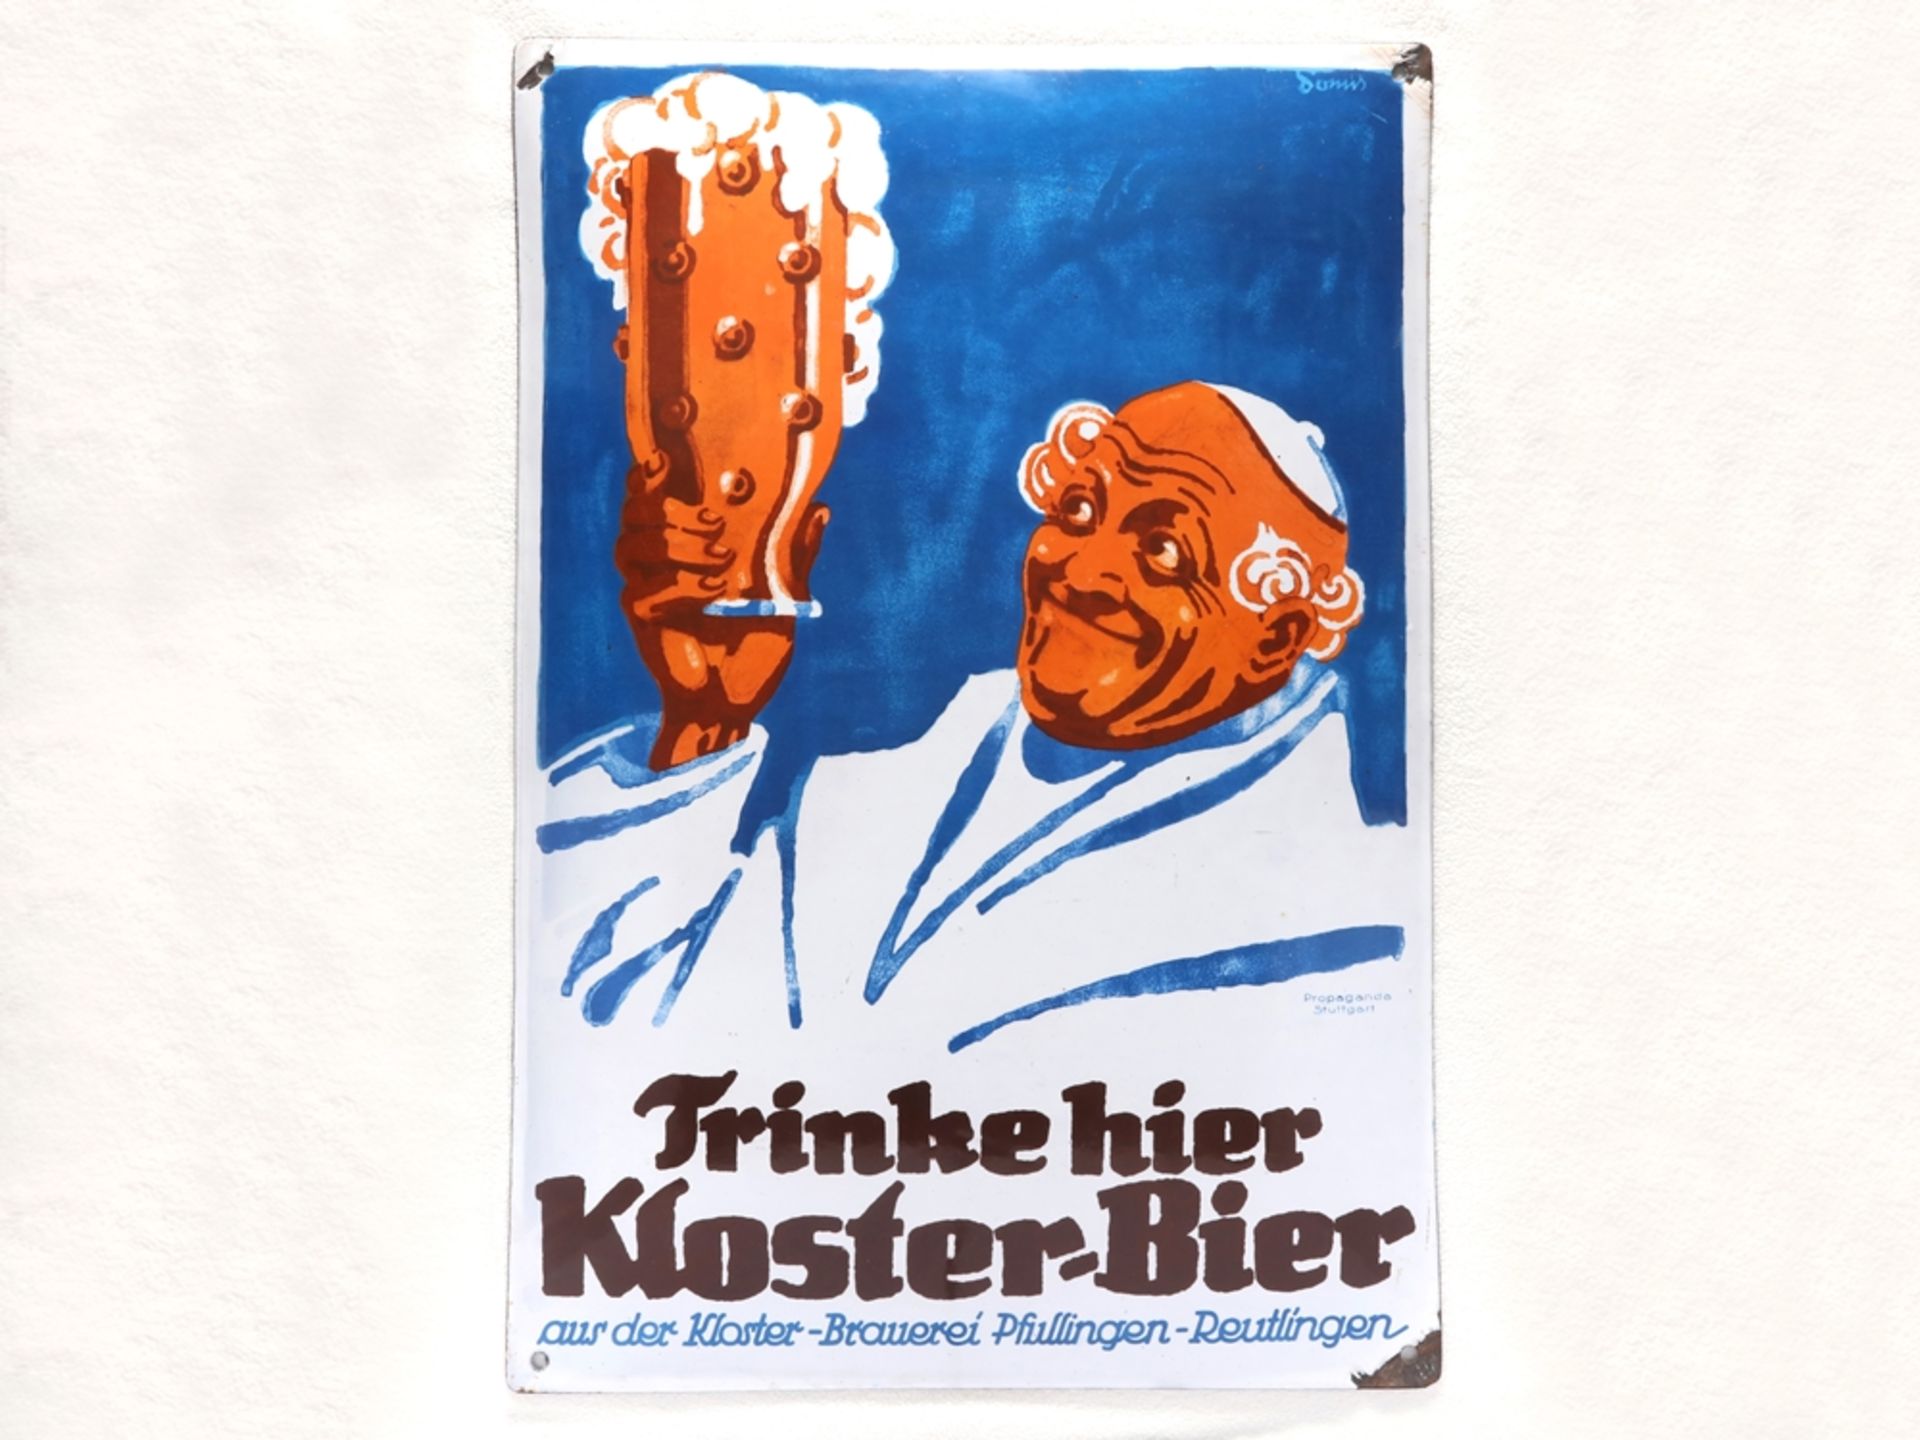 Emailschild Trinke hier Kloster Bier, Pfullingen-Reutlingen, um 1920 - Bild 7 aus 7